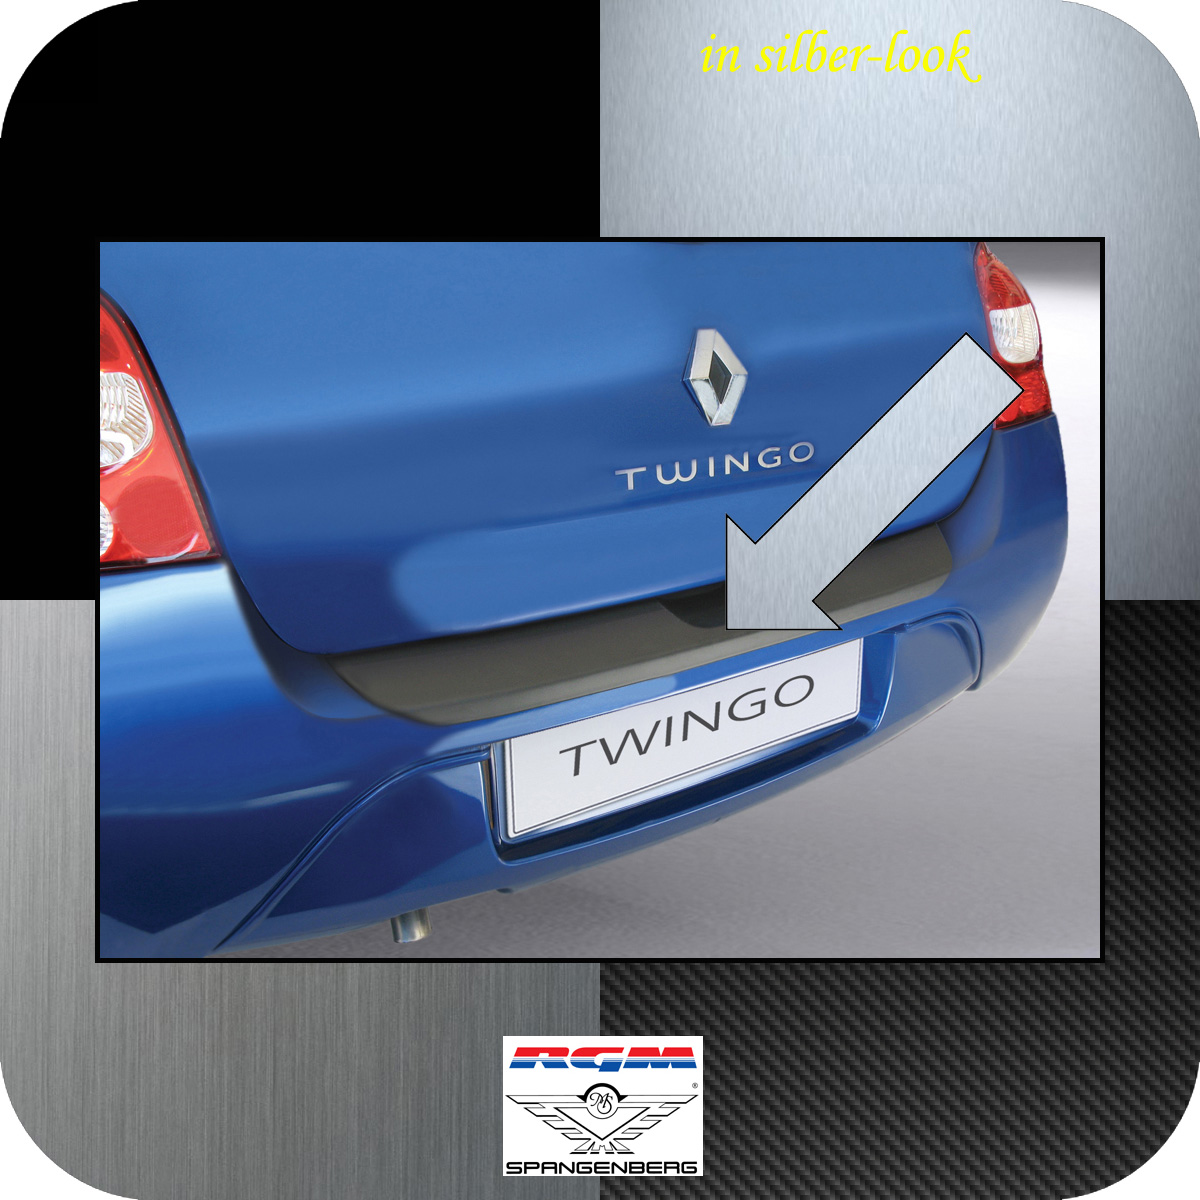 Ladekantenschutz Silber-Look Renault Twingo II 3-Türer vor Mopf 2007-11 3506147